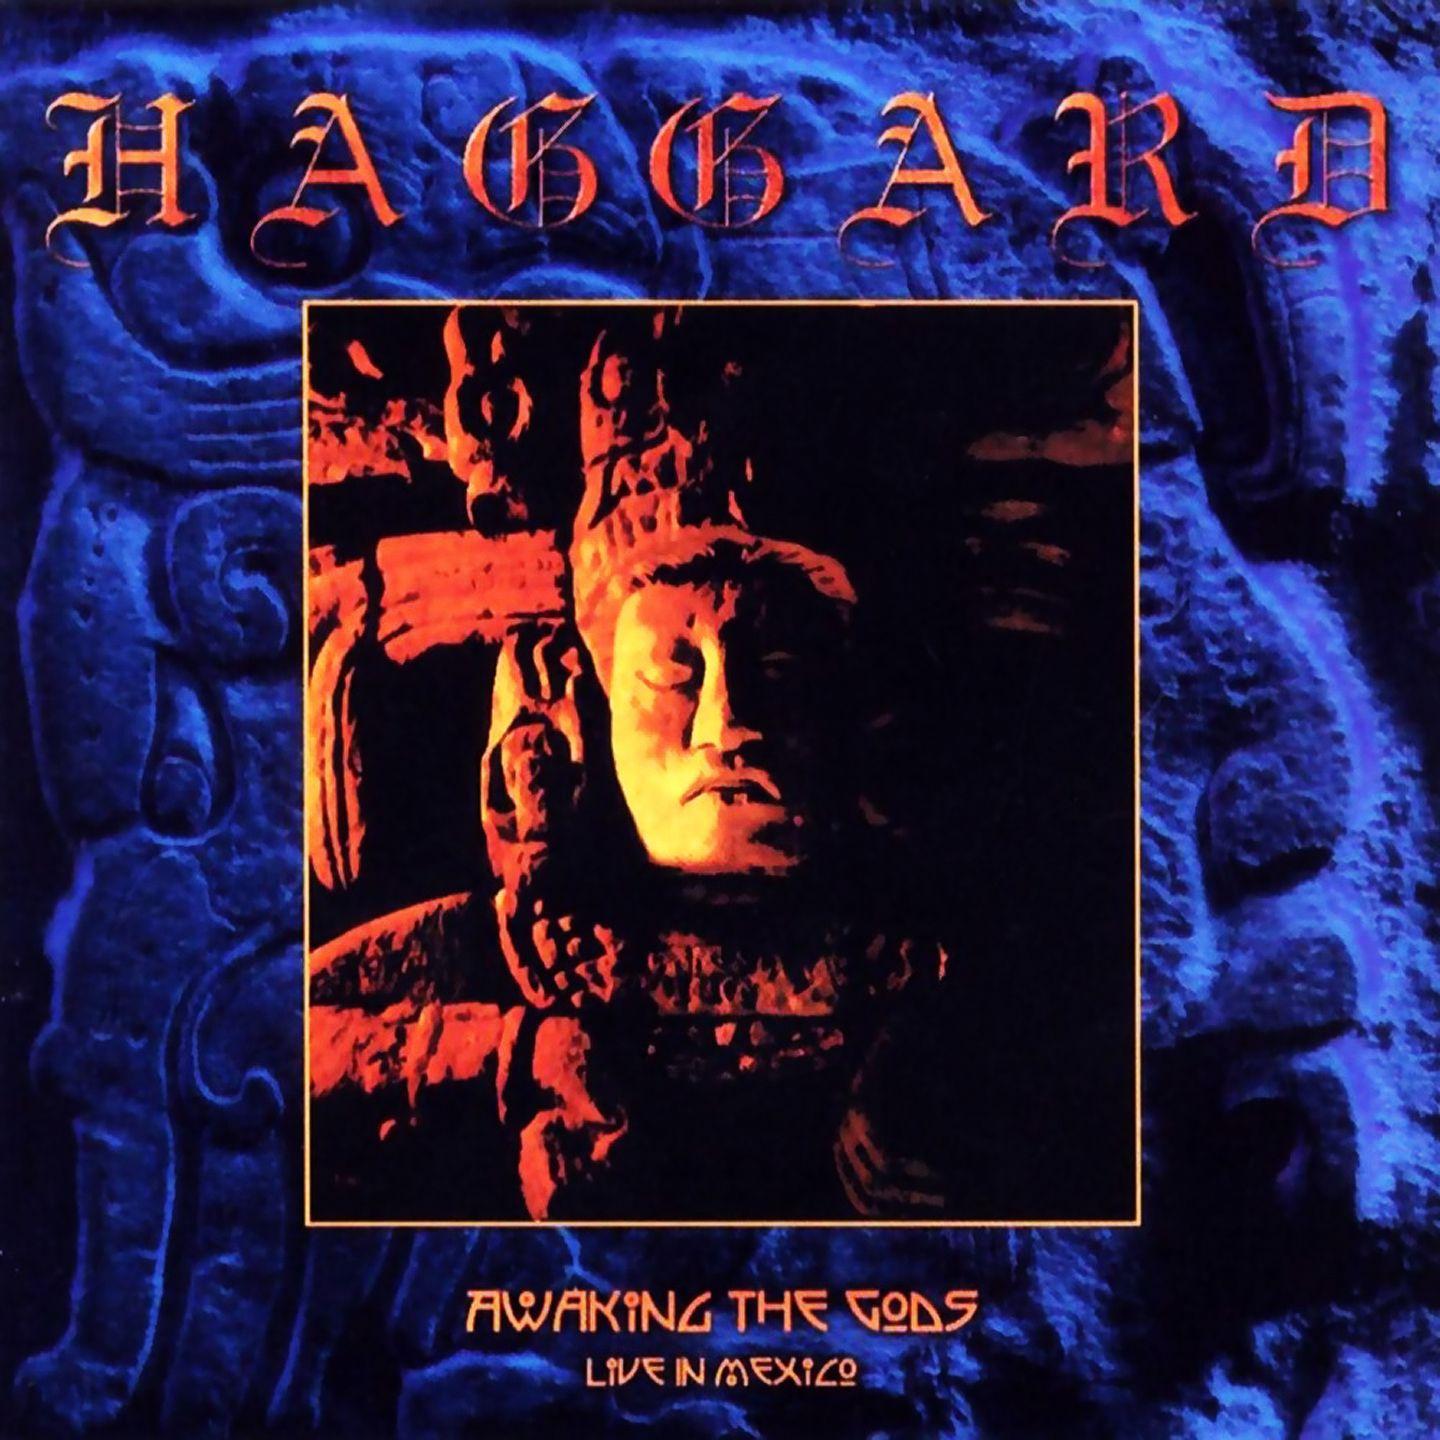 Haggard - Origin of a Crystal Soul